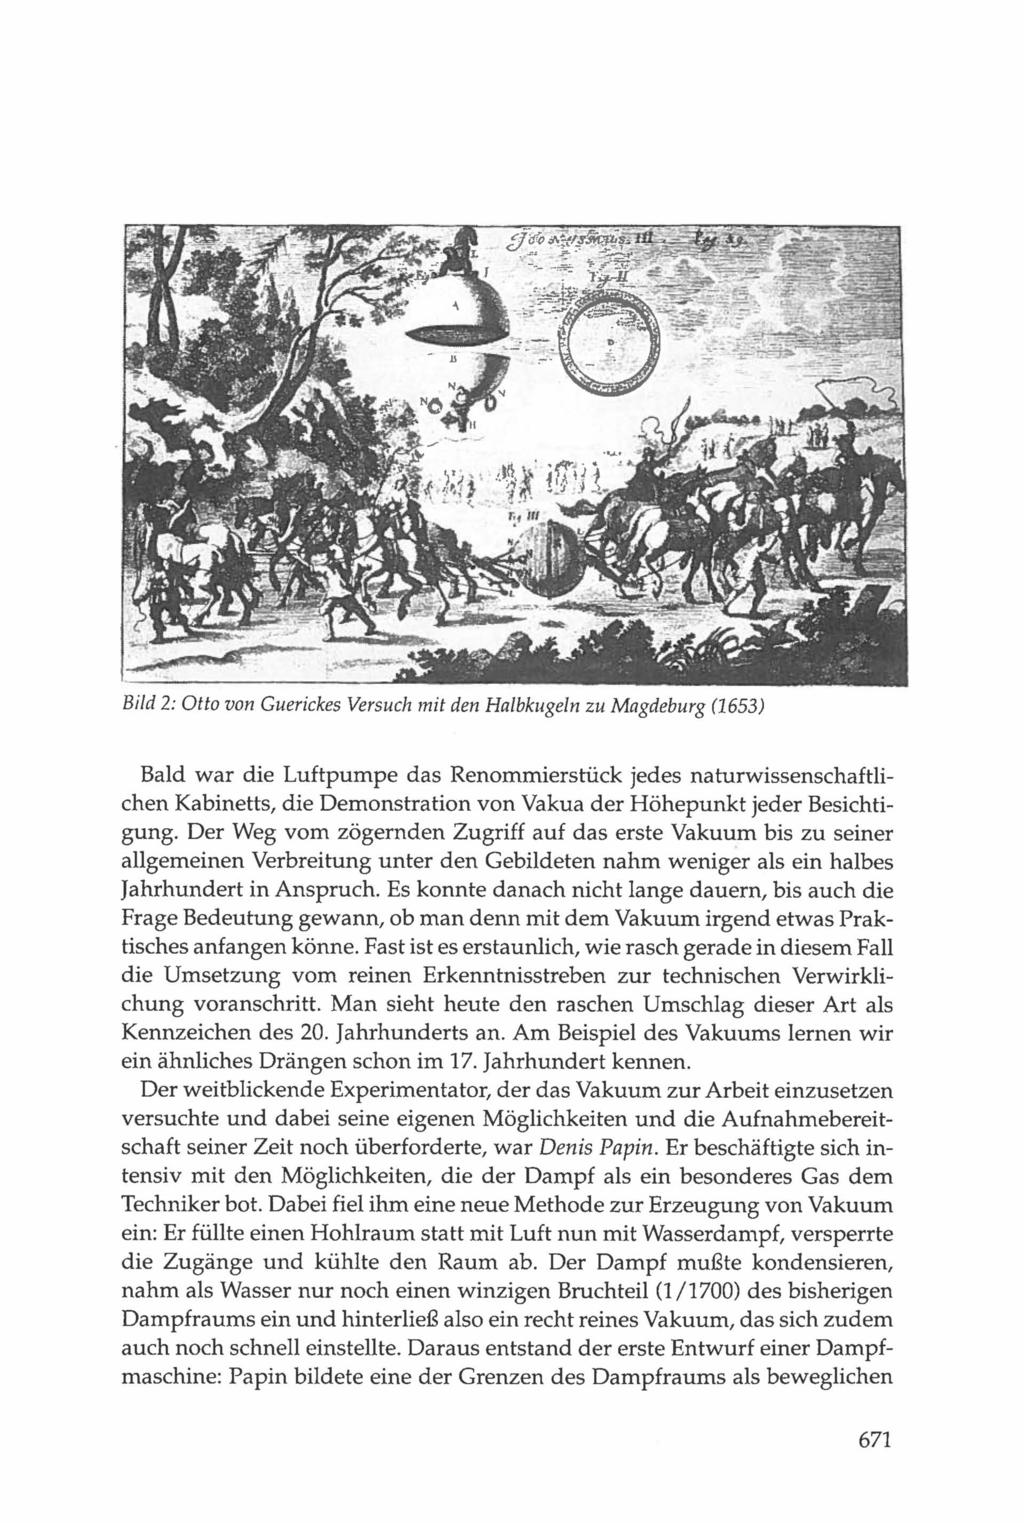 Bild 2: Otto von Guerickes Versuch mit den Halbkugeln zu Magdeburg (1653) Bald war die Luftpumpe das Renornrnierstück jedes naturwissenschaftlichen Kabinetts, die Demonstration von Vakua der